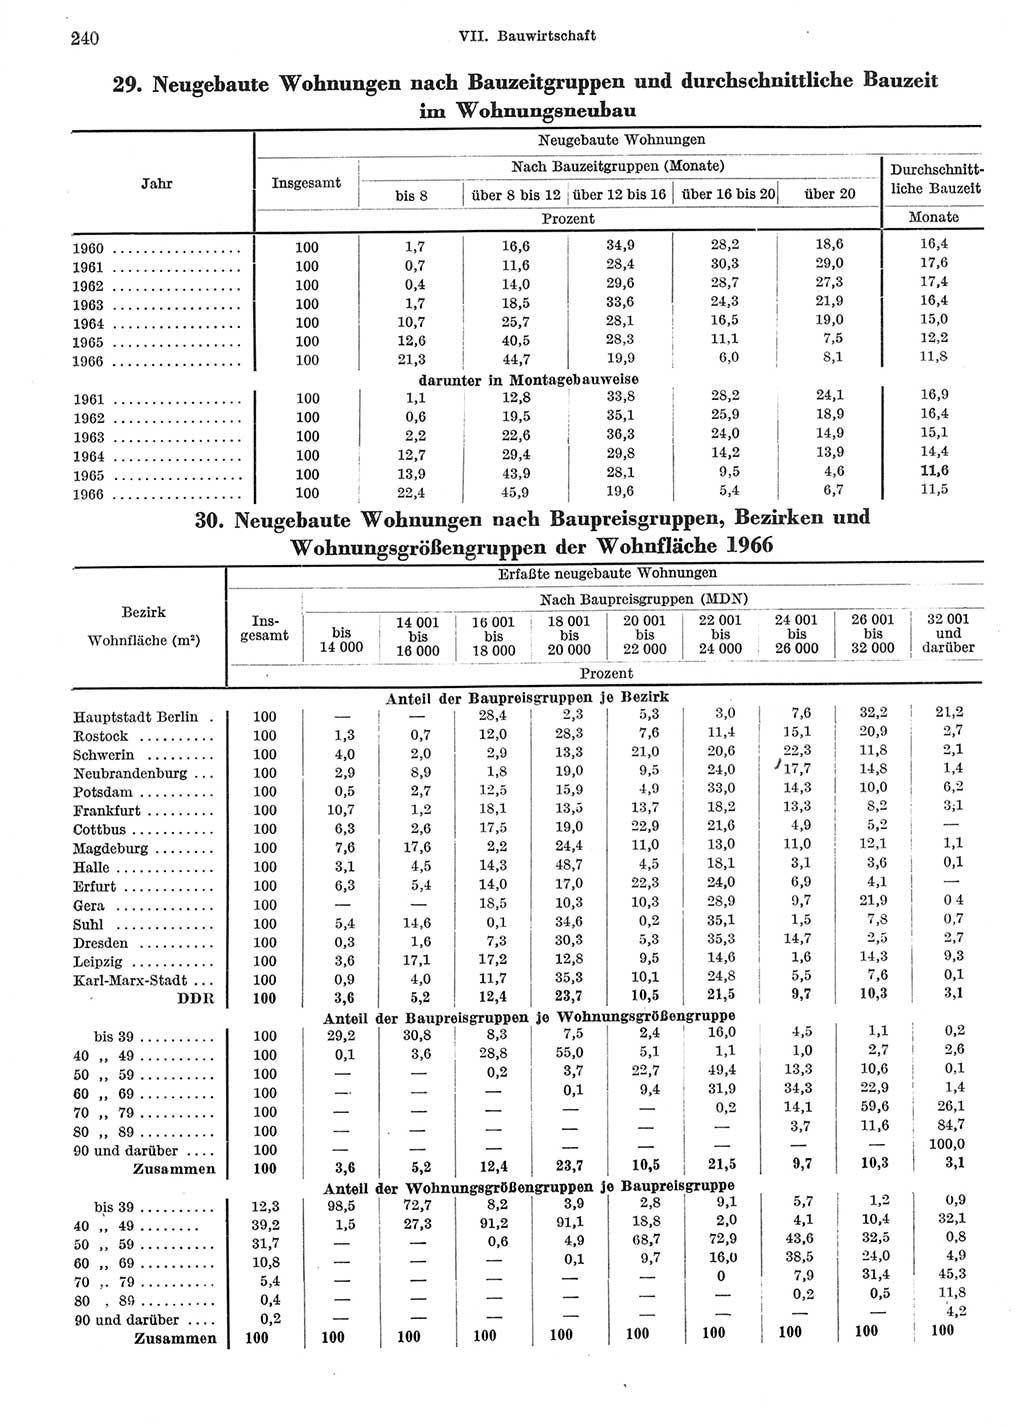 Statistisches Jahrbuch der Deutschen Demokratischen Republik (DDR) 1967, Seite 240 (Stat. Jb. DDR 1967, S. 240)